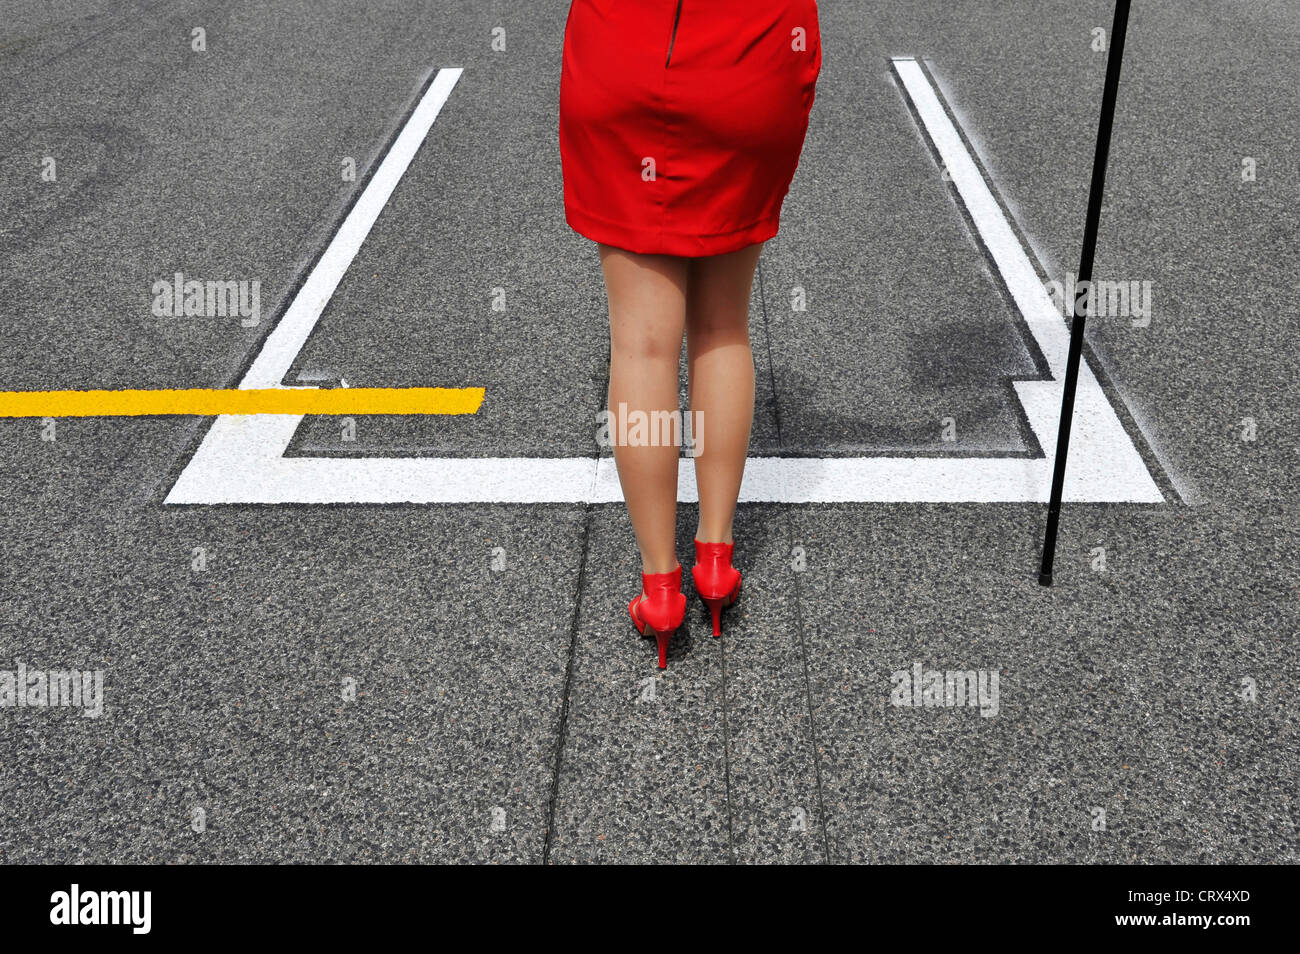 Raster-Mädchen im roten Kleid und roten hochhackigen Schuhe steht vor Start-Position für ein Formel-1-Rennwagen Stockfoto